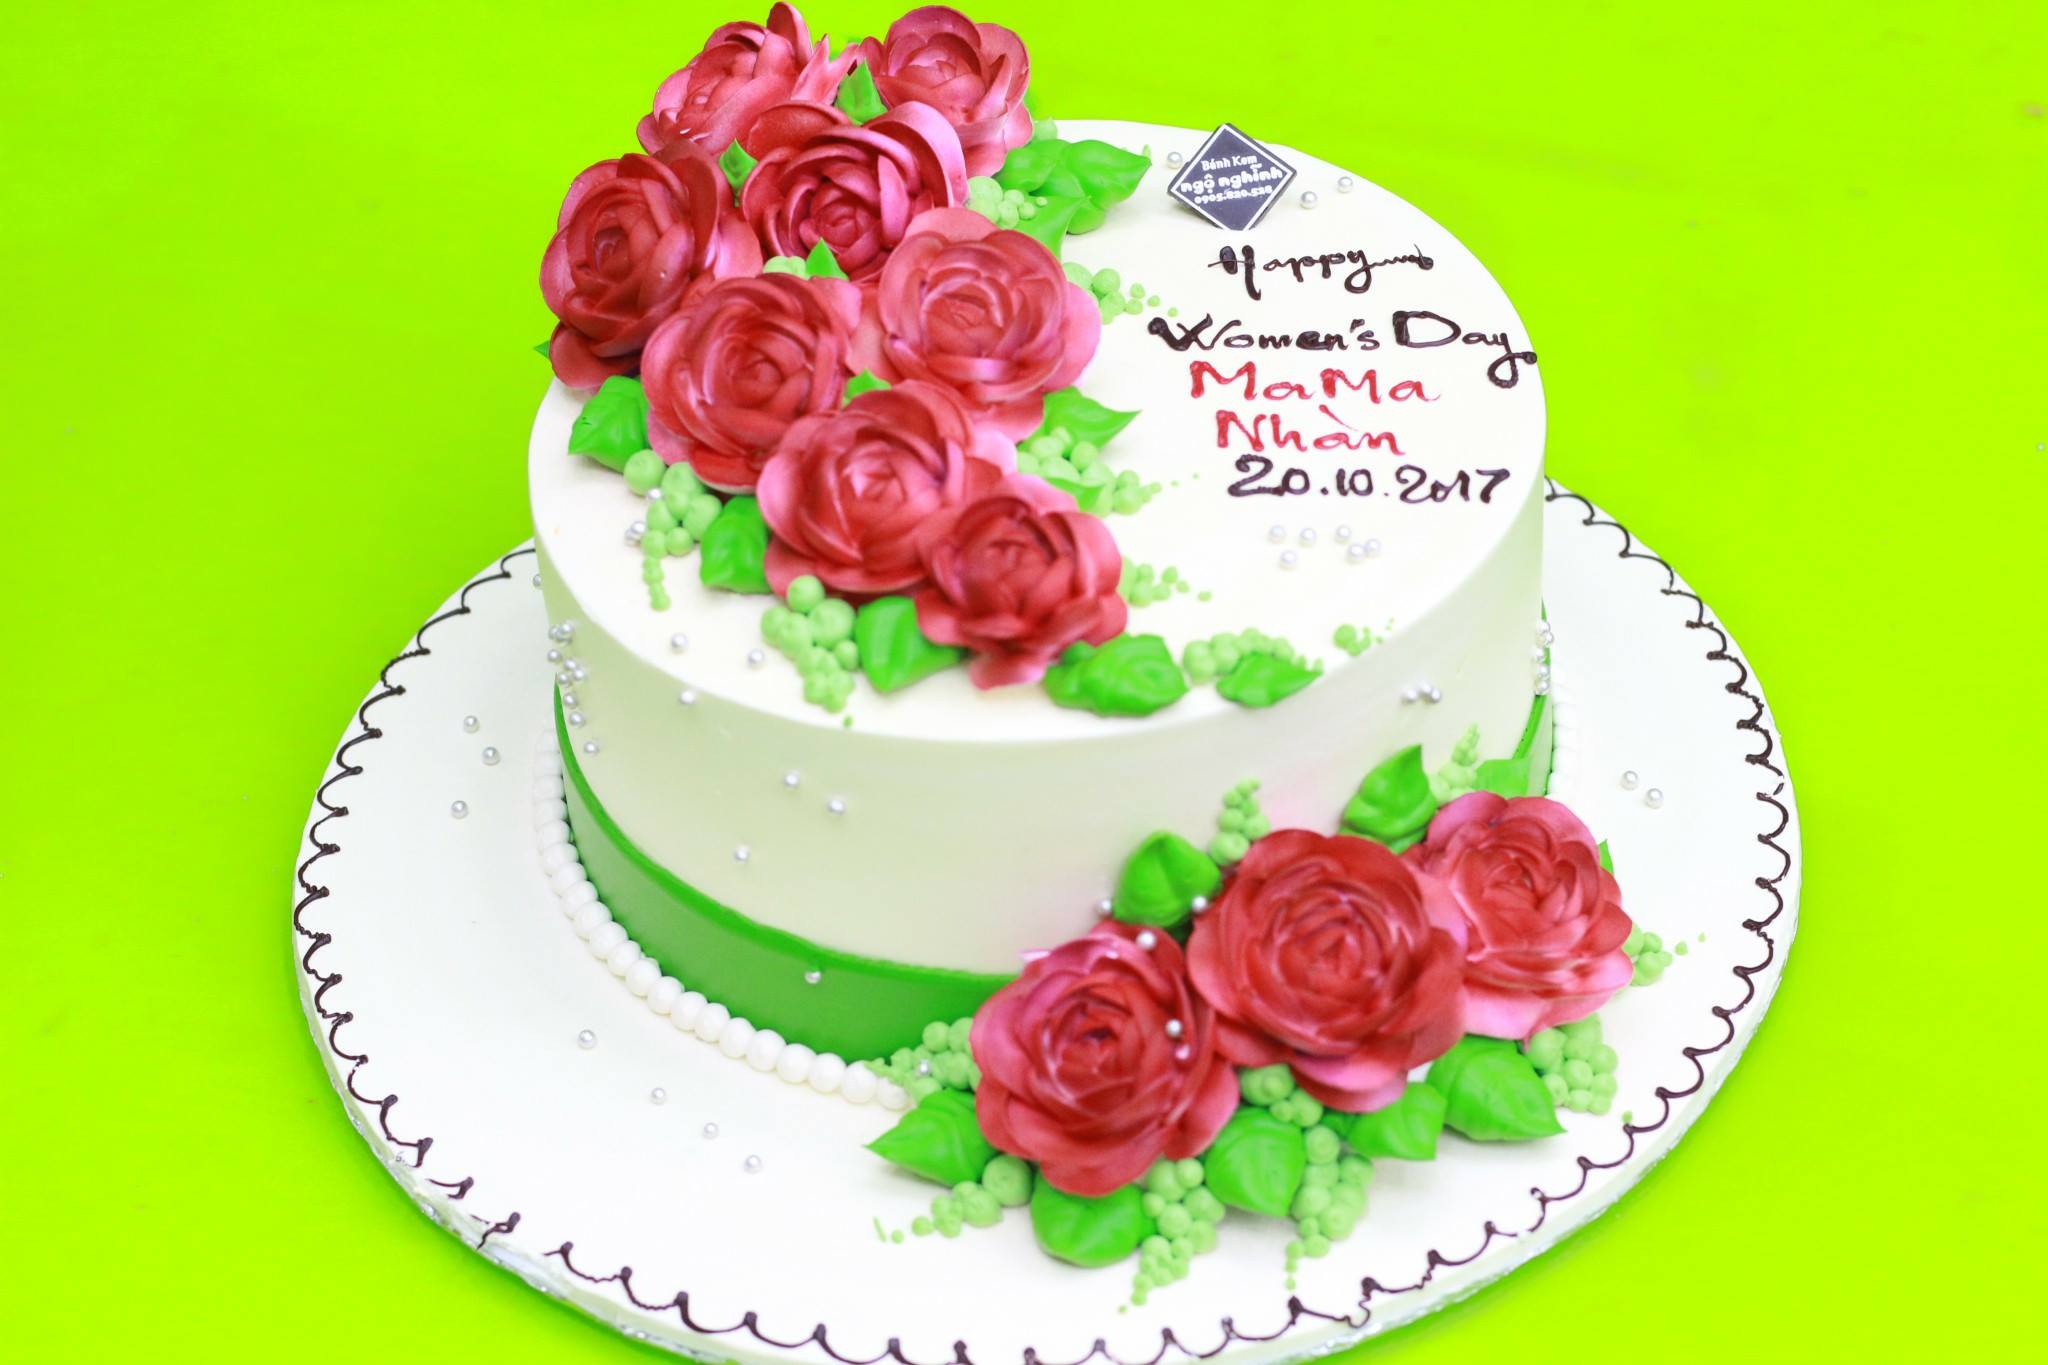 Bánh kem sinh nhật trang trí hoa bất tử: Bạn đang muốn có một chiếc bánh sinh nhật vừa ngon vừa đẹp cho buổi tiệc sinh nhật của mình? Hãy xem ngay hình ảnh bánh kem sinh nhật trang trí hoa bất tử. Với chiếc bánh này, bữa tiệc sinh nhật của bạn sẽ trở nên đặc biệt và tuyệt vời hơn bao giờ hết.